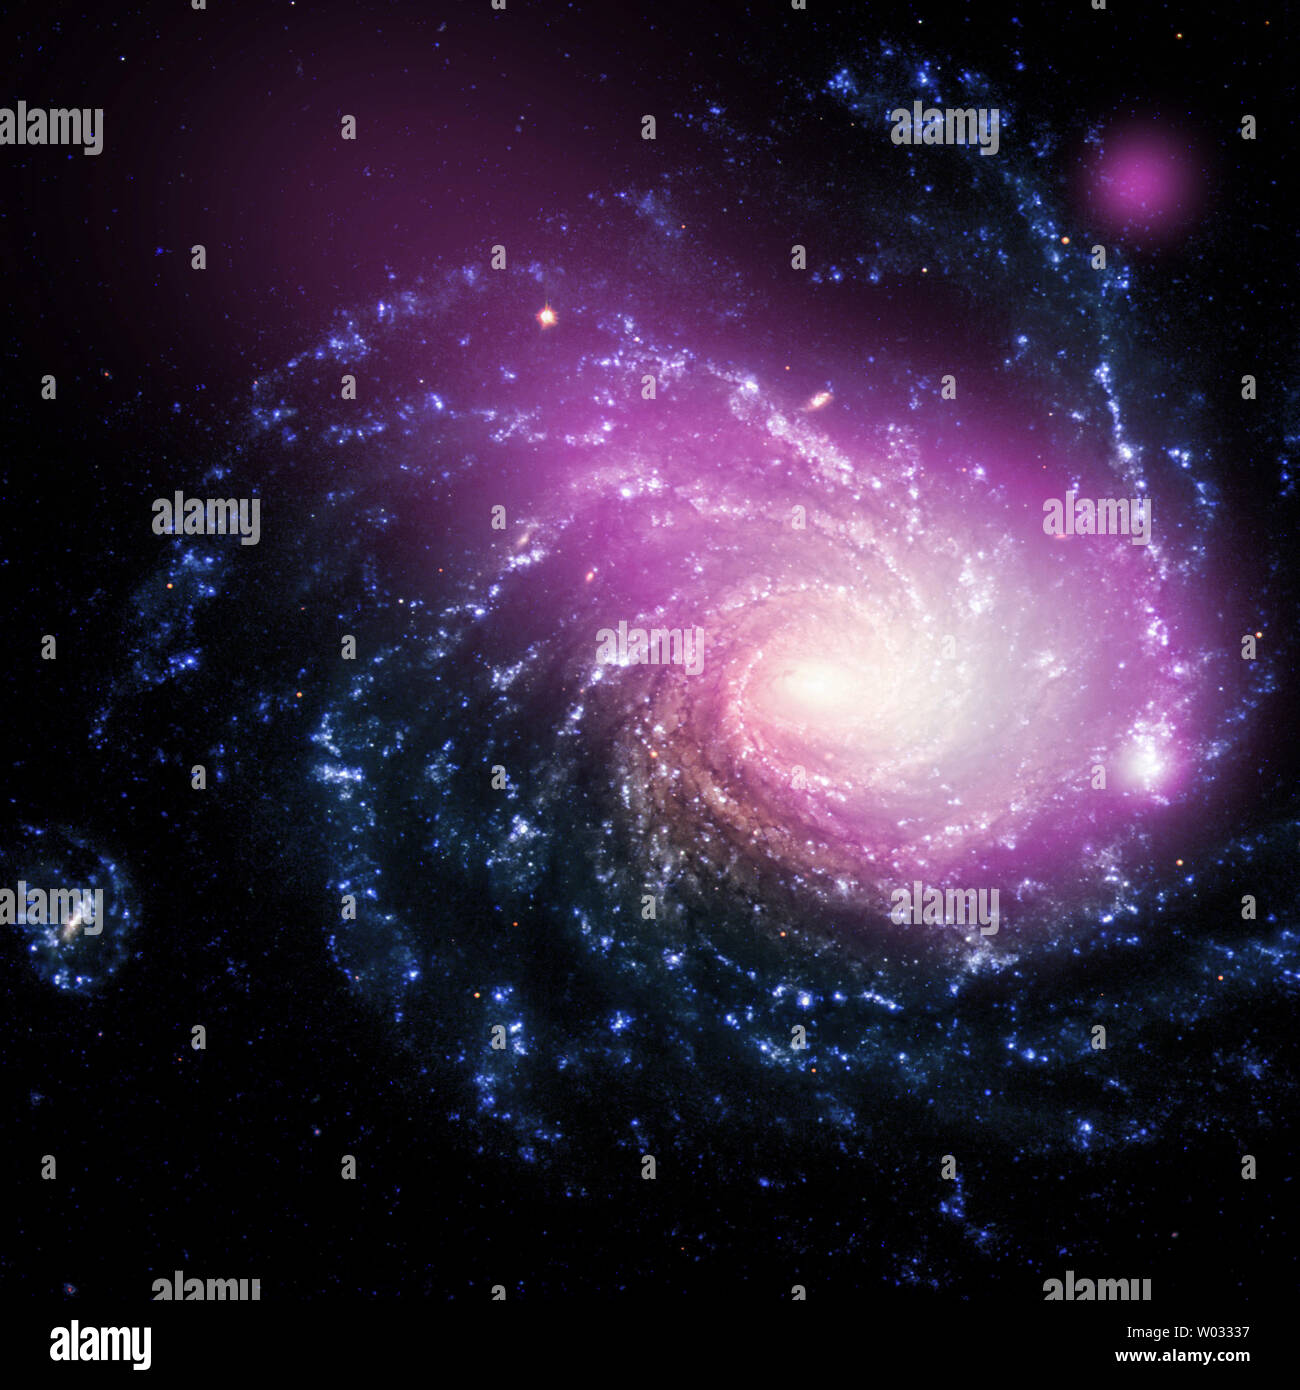 Beobachtungen mit der NASA Chandra X-ray Observatory haben einen massiven Wolke von multimillion - Grad Gas in einer Galaxie etwa 60 Millionen Lichtjahre von der Erde offenbart. Das heiße Gas Cloud wird wahrscheinlich durch eine Kollision zwischen einer Zwerggalaxie und eine viel größere Galaxie "NGC 1232 verursacht. Wenn bestätigt, diese Entdeckung würde Mark das erste Mal eine solche Kollision nur in X erkannt wurde - strahlen und könnten Auswirkungen für das Verständnis, wie Galaxien durch ähnliche Kollisionen wachsen haben. Ein Bild die Kombination von Röntgen- und optischen Licht zeigt die Szene dieser Kollision. Die Auswirkungen zwischen der Zwerggalaxie und die Stockfoto